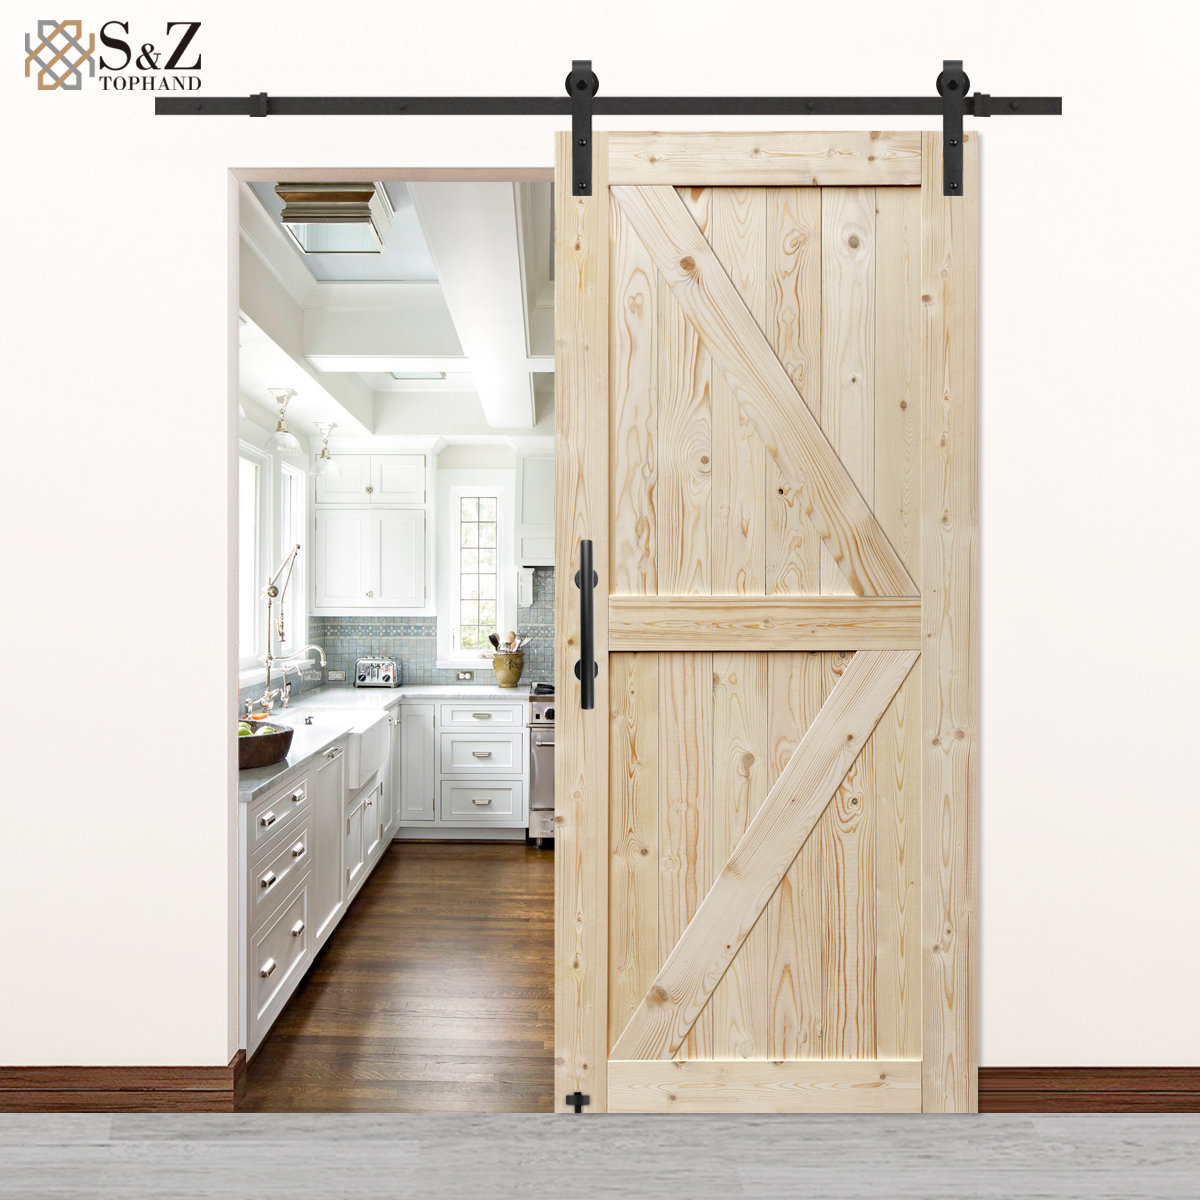 S&Z TOPHAND® Puerta de granero de PVC de 24 pulgadas x 84 pulgadas, textura  de madera blanca, marco de acero inoxidable de 20-42 pulgadas, puerta de